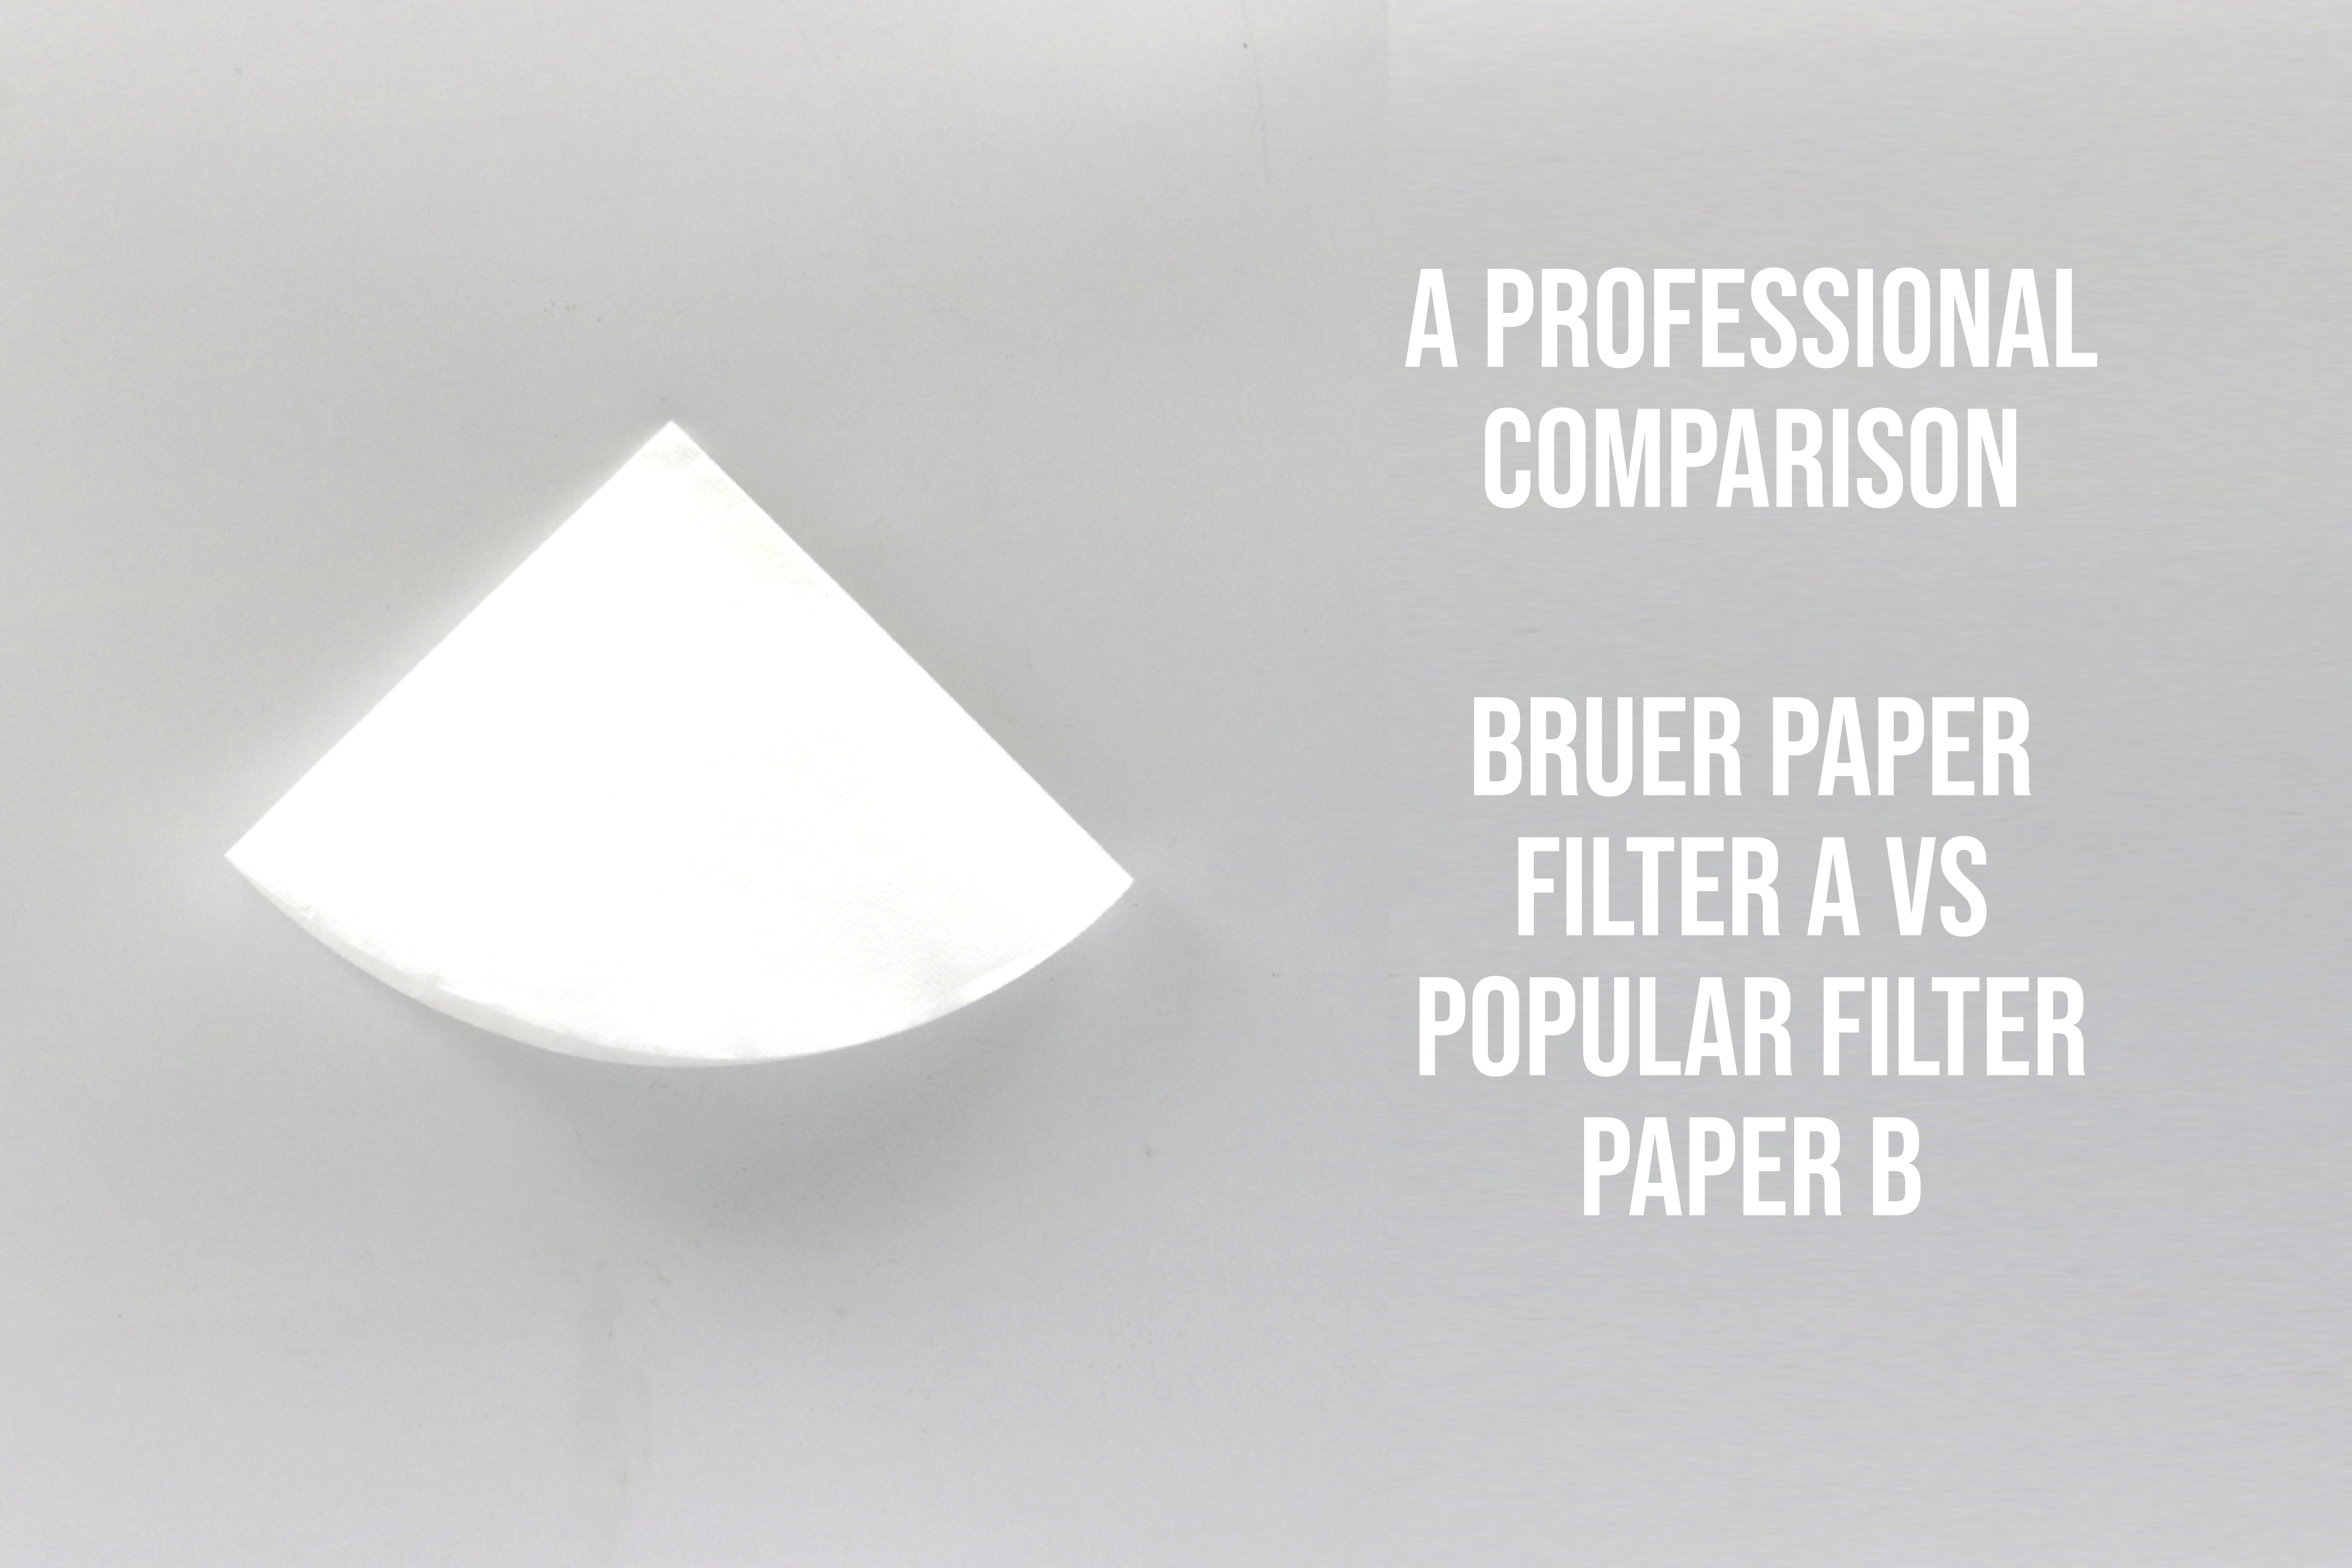 Bruer Cone Paper Filter A vs Popular Cone Filter Paper B: A Professional Comparison 